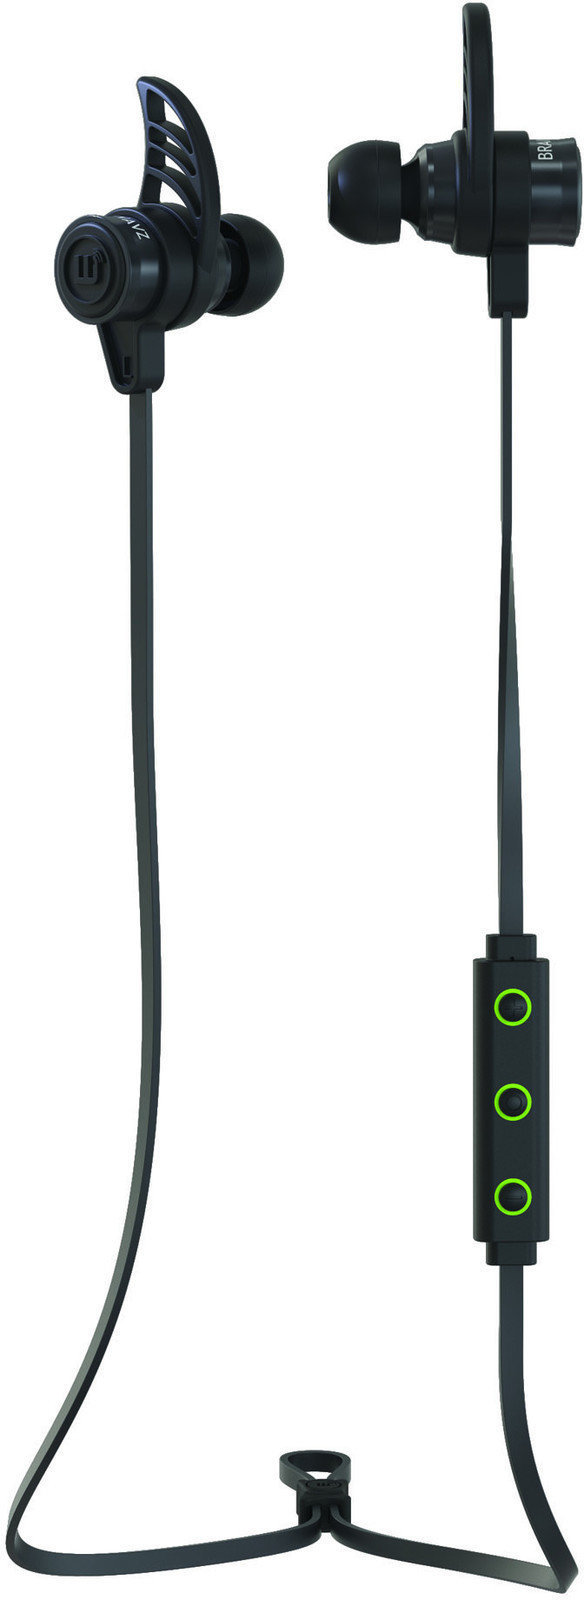 Drahtlose In-Ear-Kopfhörer Brainwavz BLU-200 Bluetooth 4.0 aptX In-Ear Earphones Black